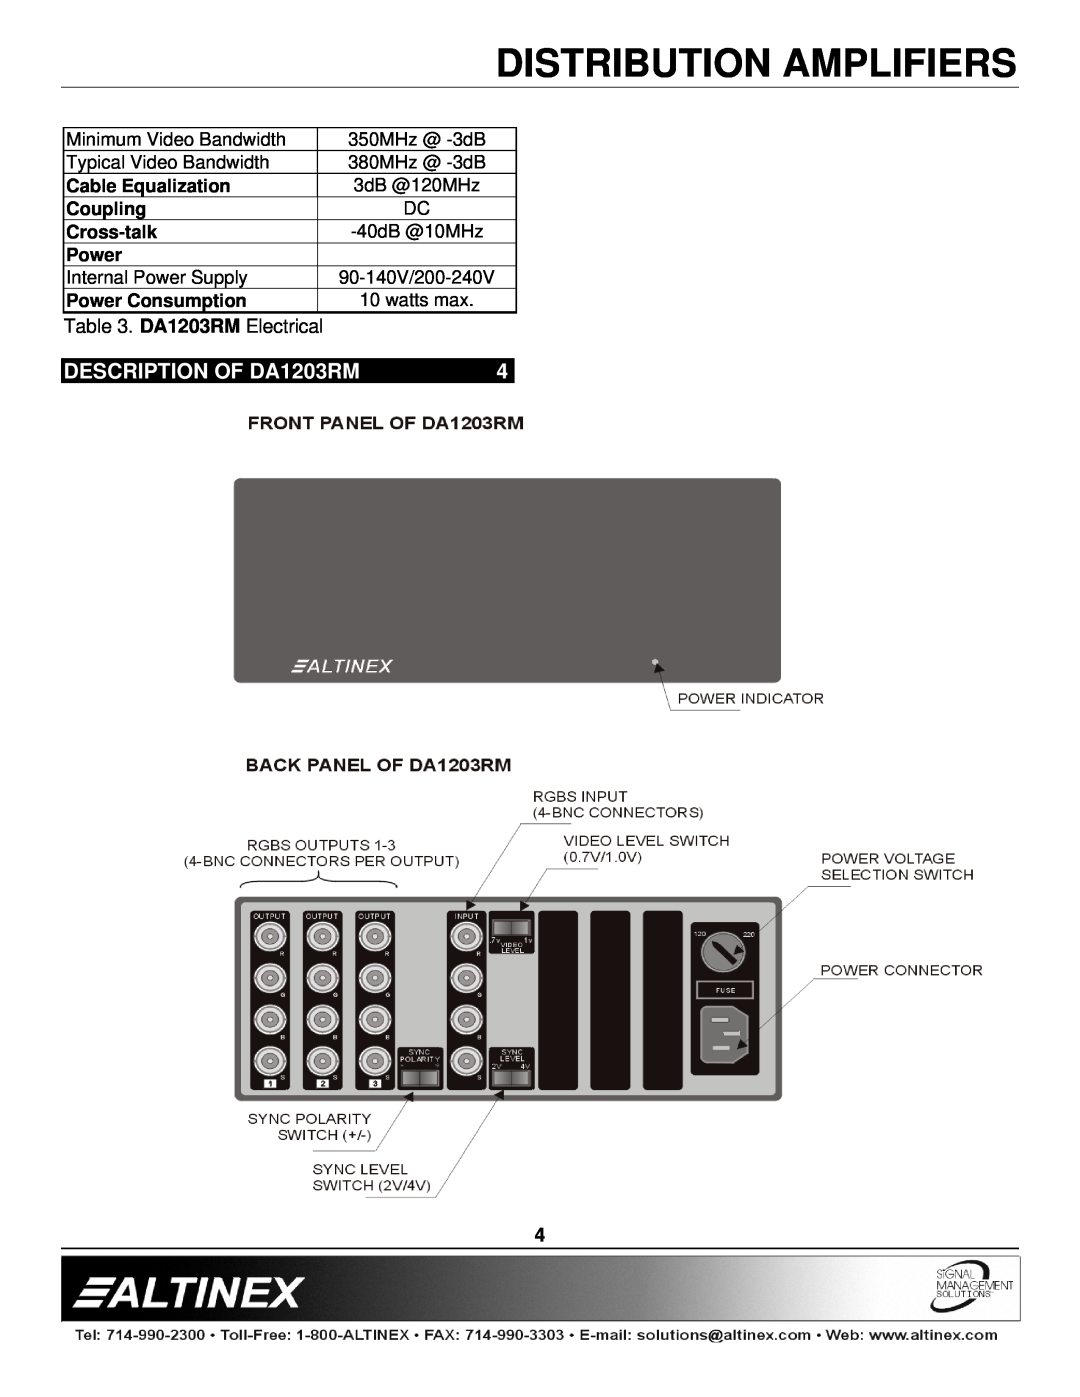 Altinex manual DESCRIPTION OF DA1203RM, Distribution Amplifiers, DA1203RM Electrical, 90-140V/200-240V 